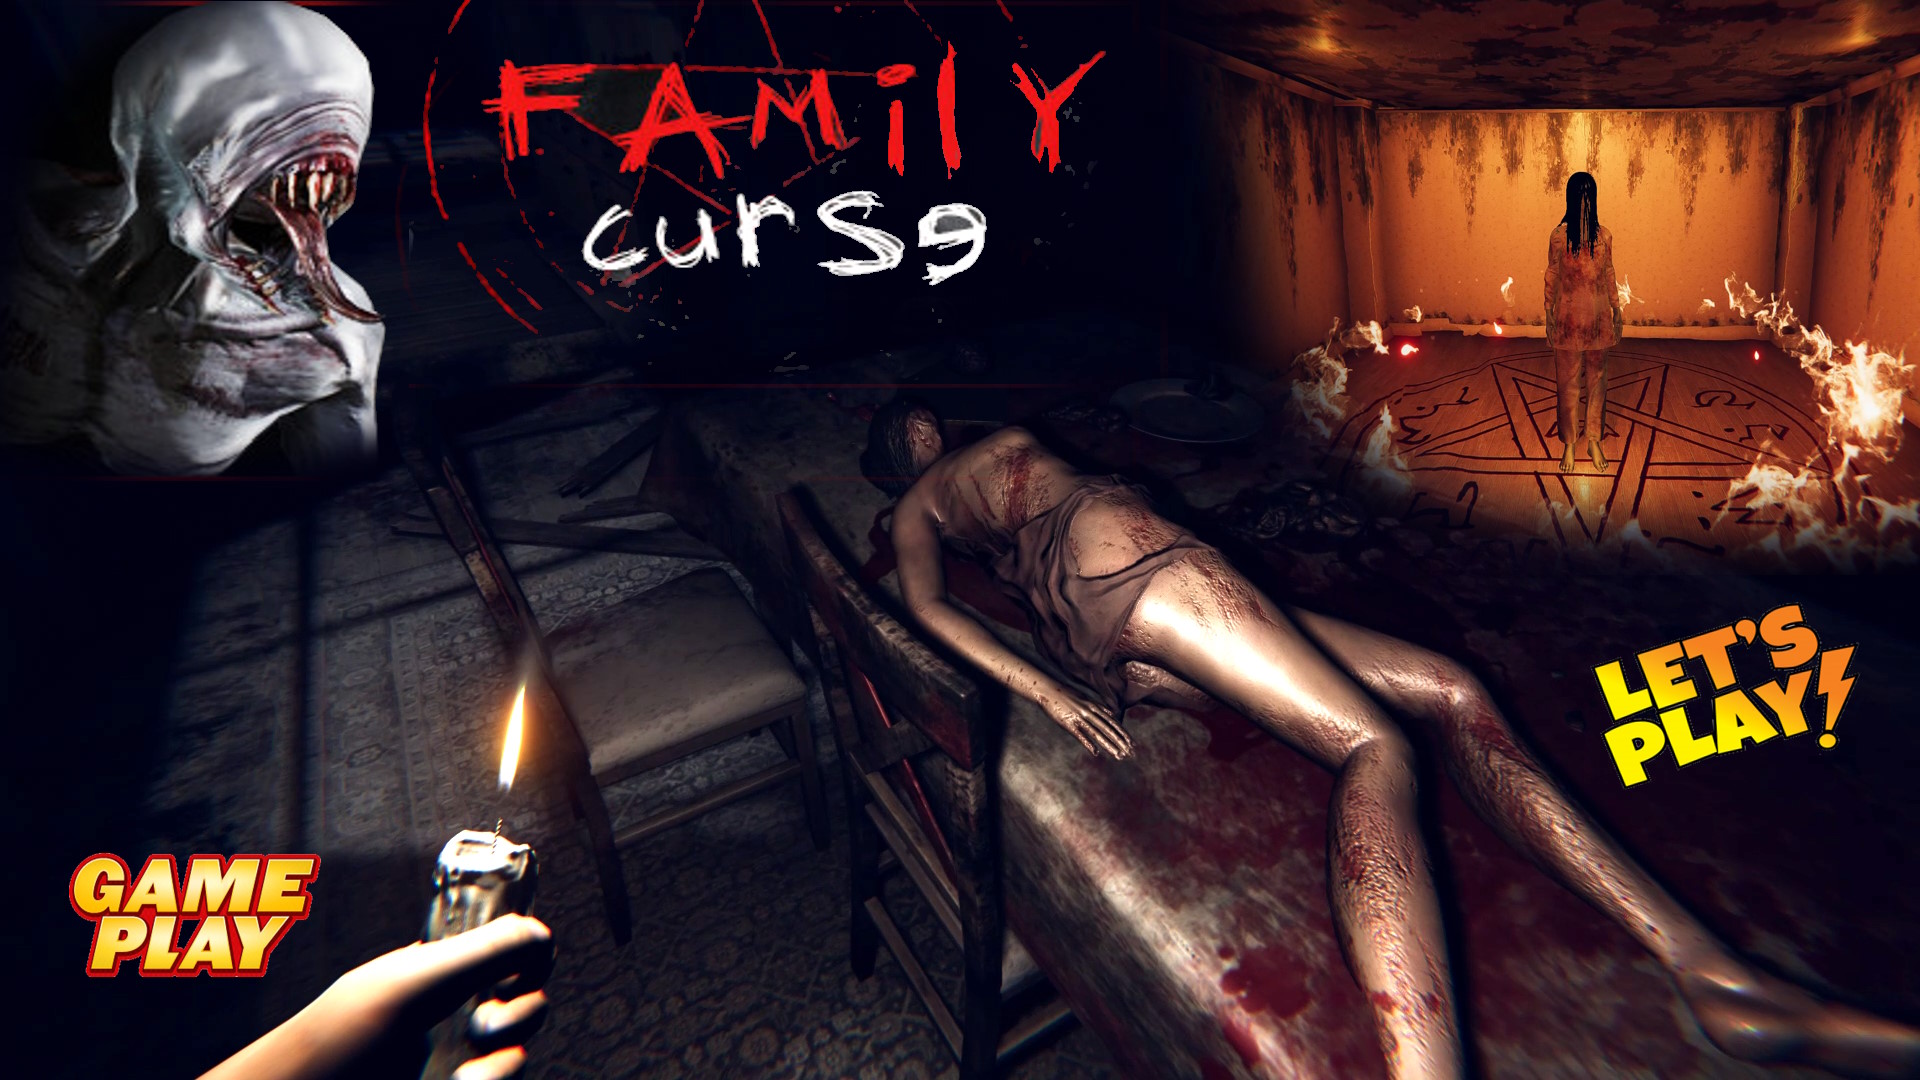 Family curse ✅ New Психологический ужастик / Прохождение Бесплатной Демки ✅ ПК Steam игра 2023